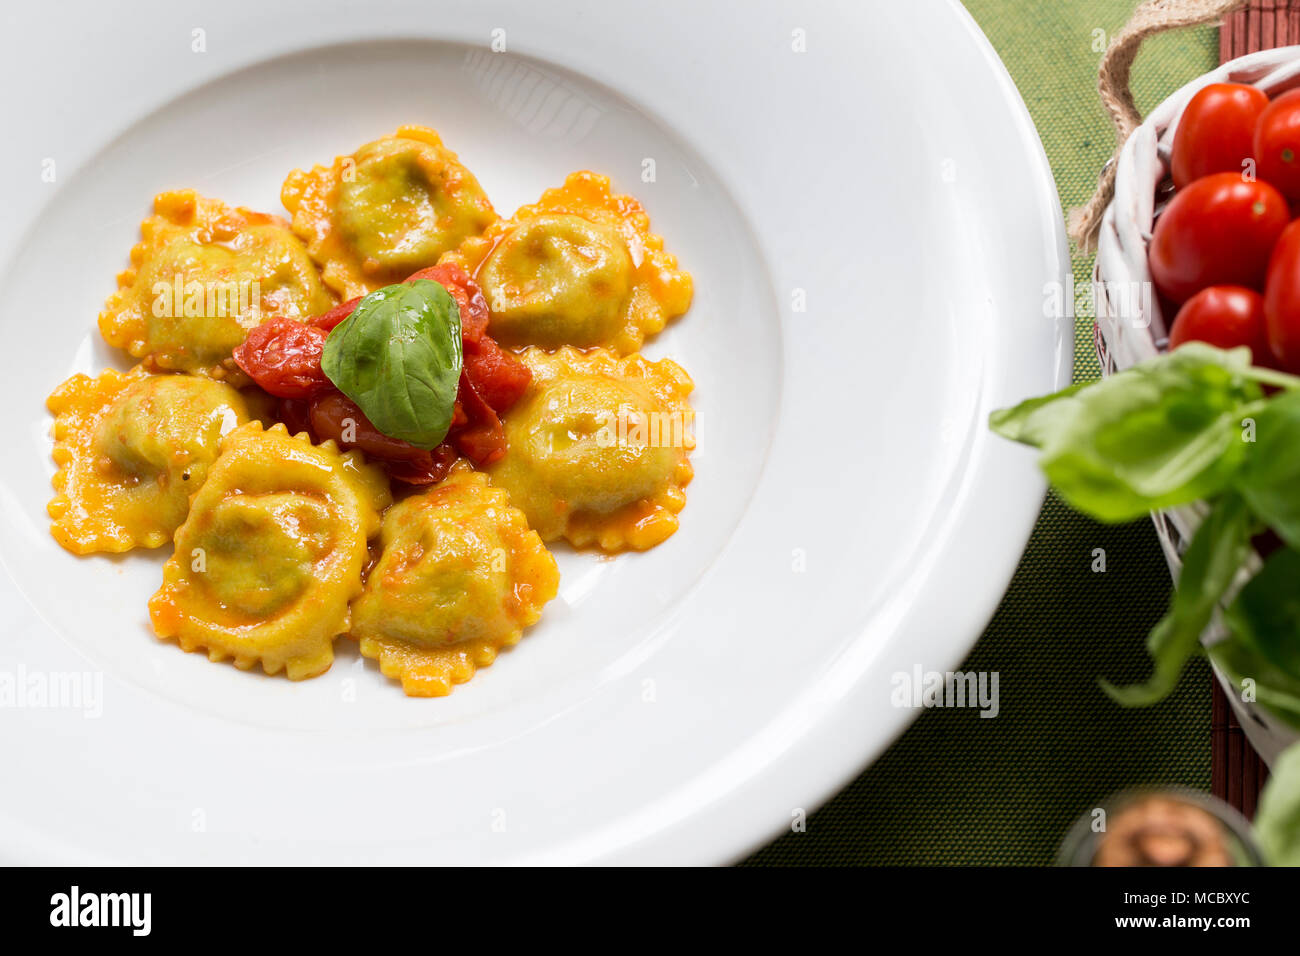 Una piastra di italian pasta ripiena, ravioli con salsa di pomodoro fresco, le foglie di basilico e olio di oliva con soggetti e concentrarsi sulla sinistra su un tavolo verde panno Foto Stock